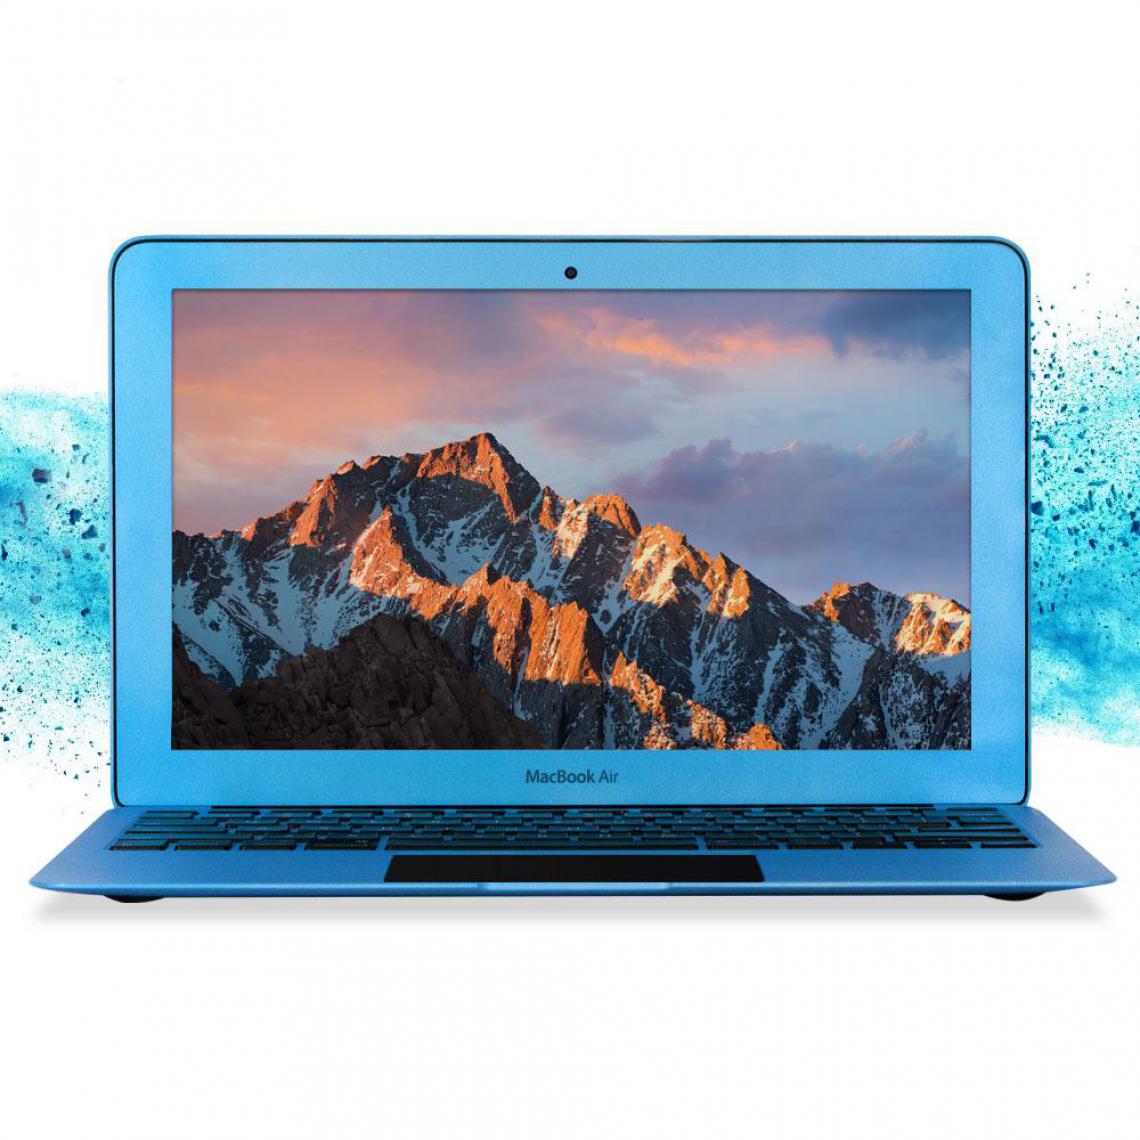 Apple - MacBook Air 11'' Core i5 4Go 128Go SSD (MJVM2FN/A) Blue Lagon - MacBook